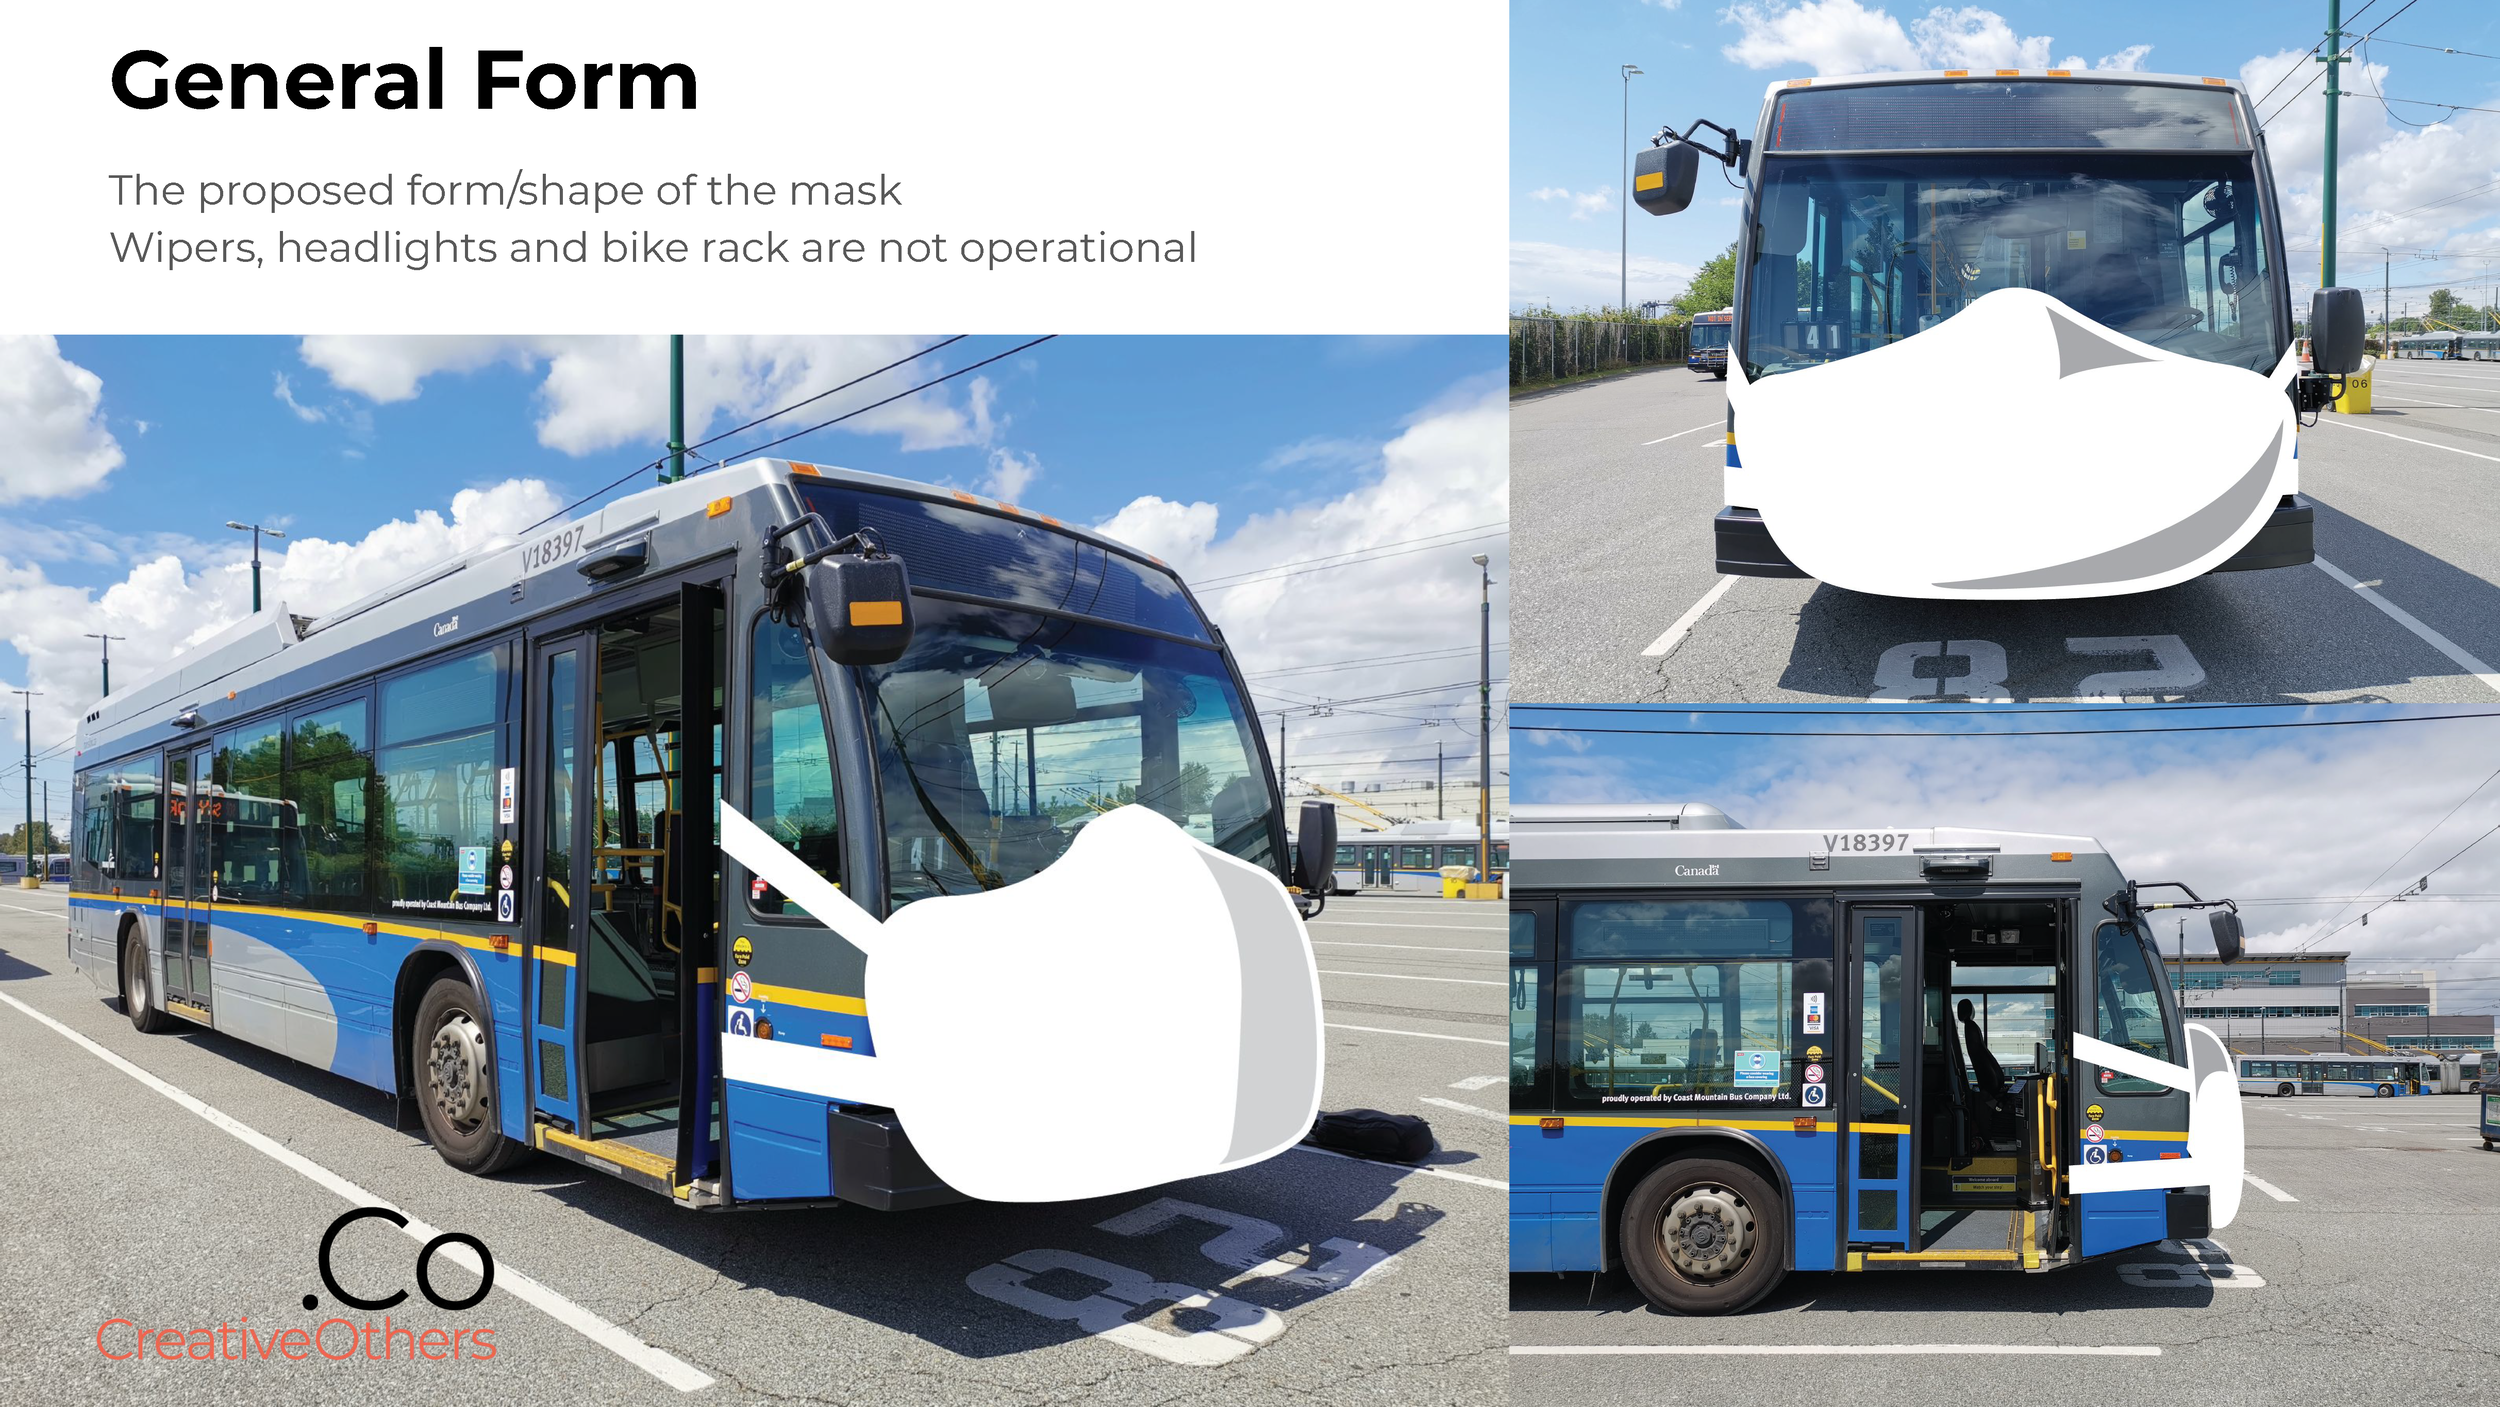 Translink Bus Mask Design Proposal 08-06-2020_Page_4.png